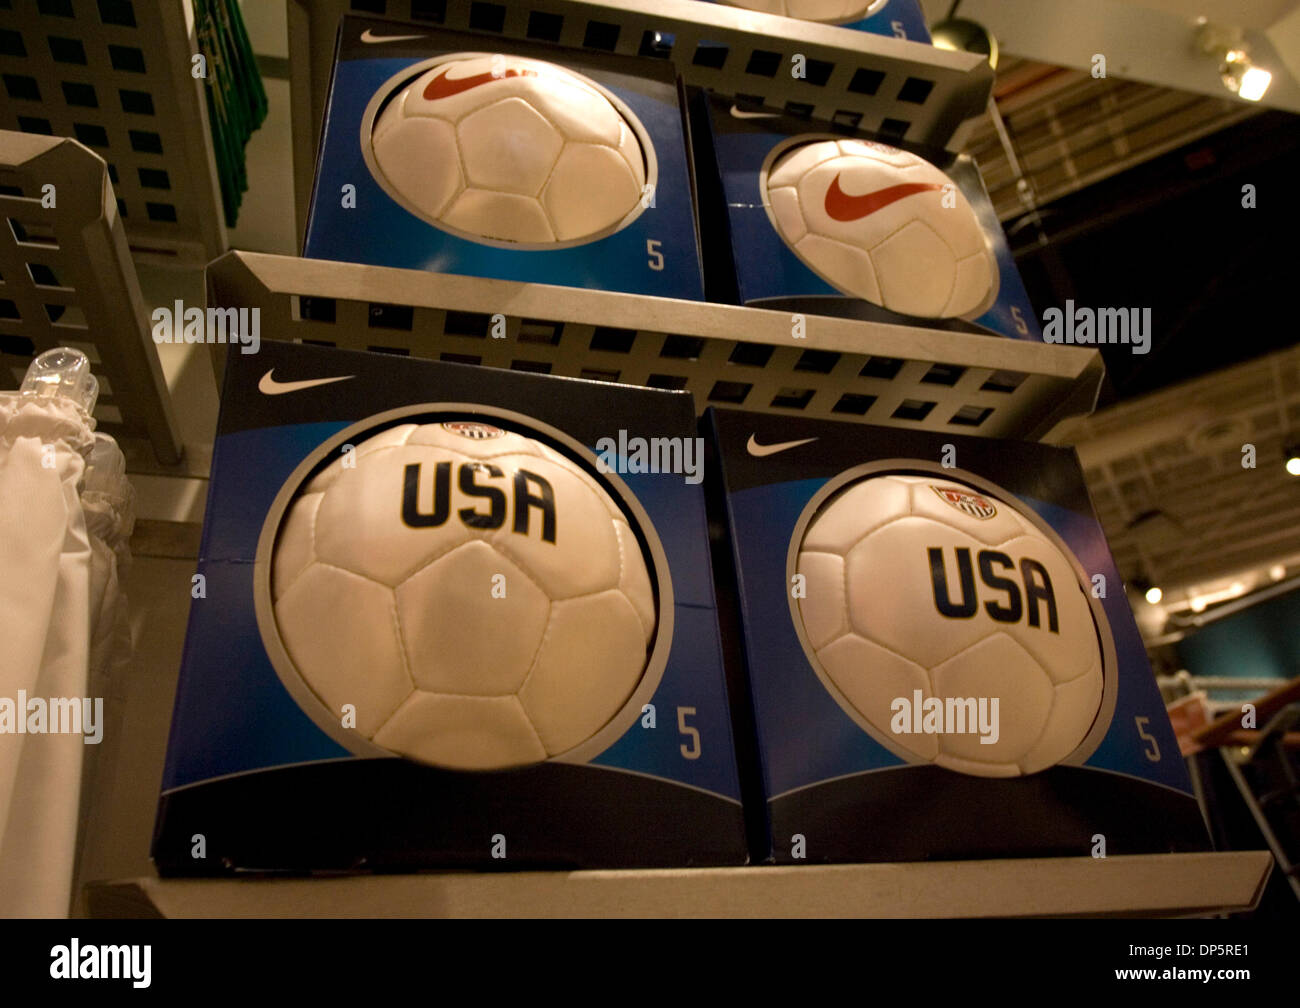 Sep 22, 2006 ; Portland, OR, USA ; logo Nike orné des ballons de foot sont  affichées au magasin Niketown dans le centre-ville de Portland. Nike est un  important fabricant américain de